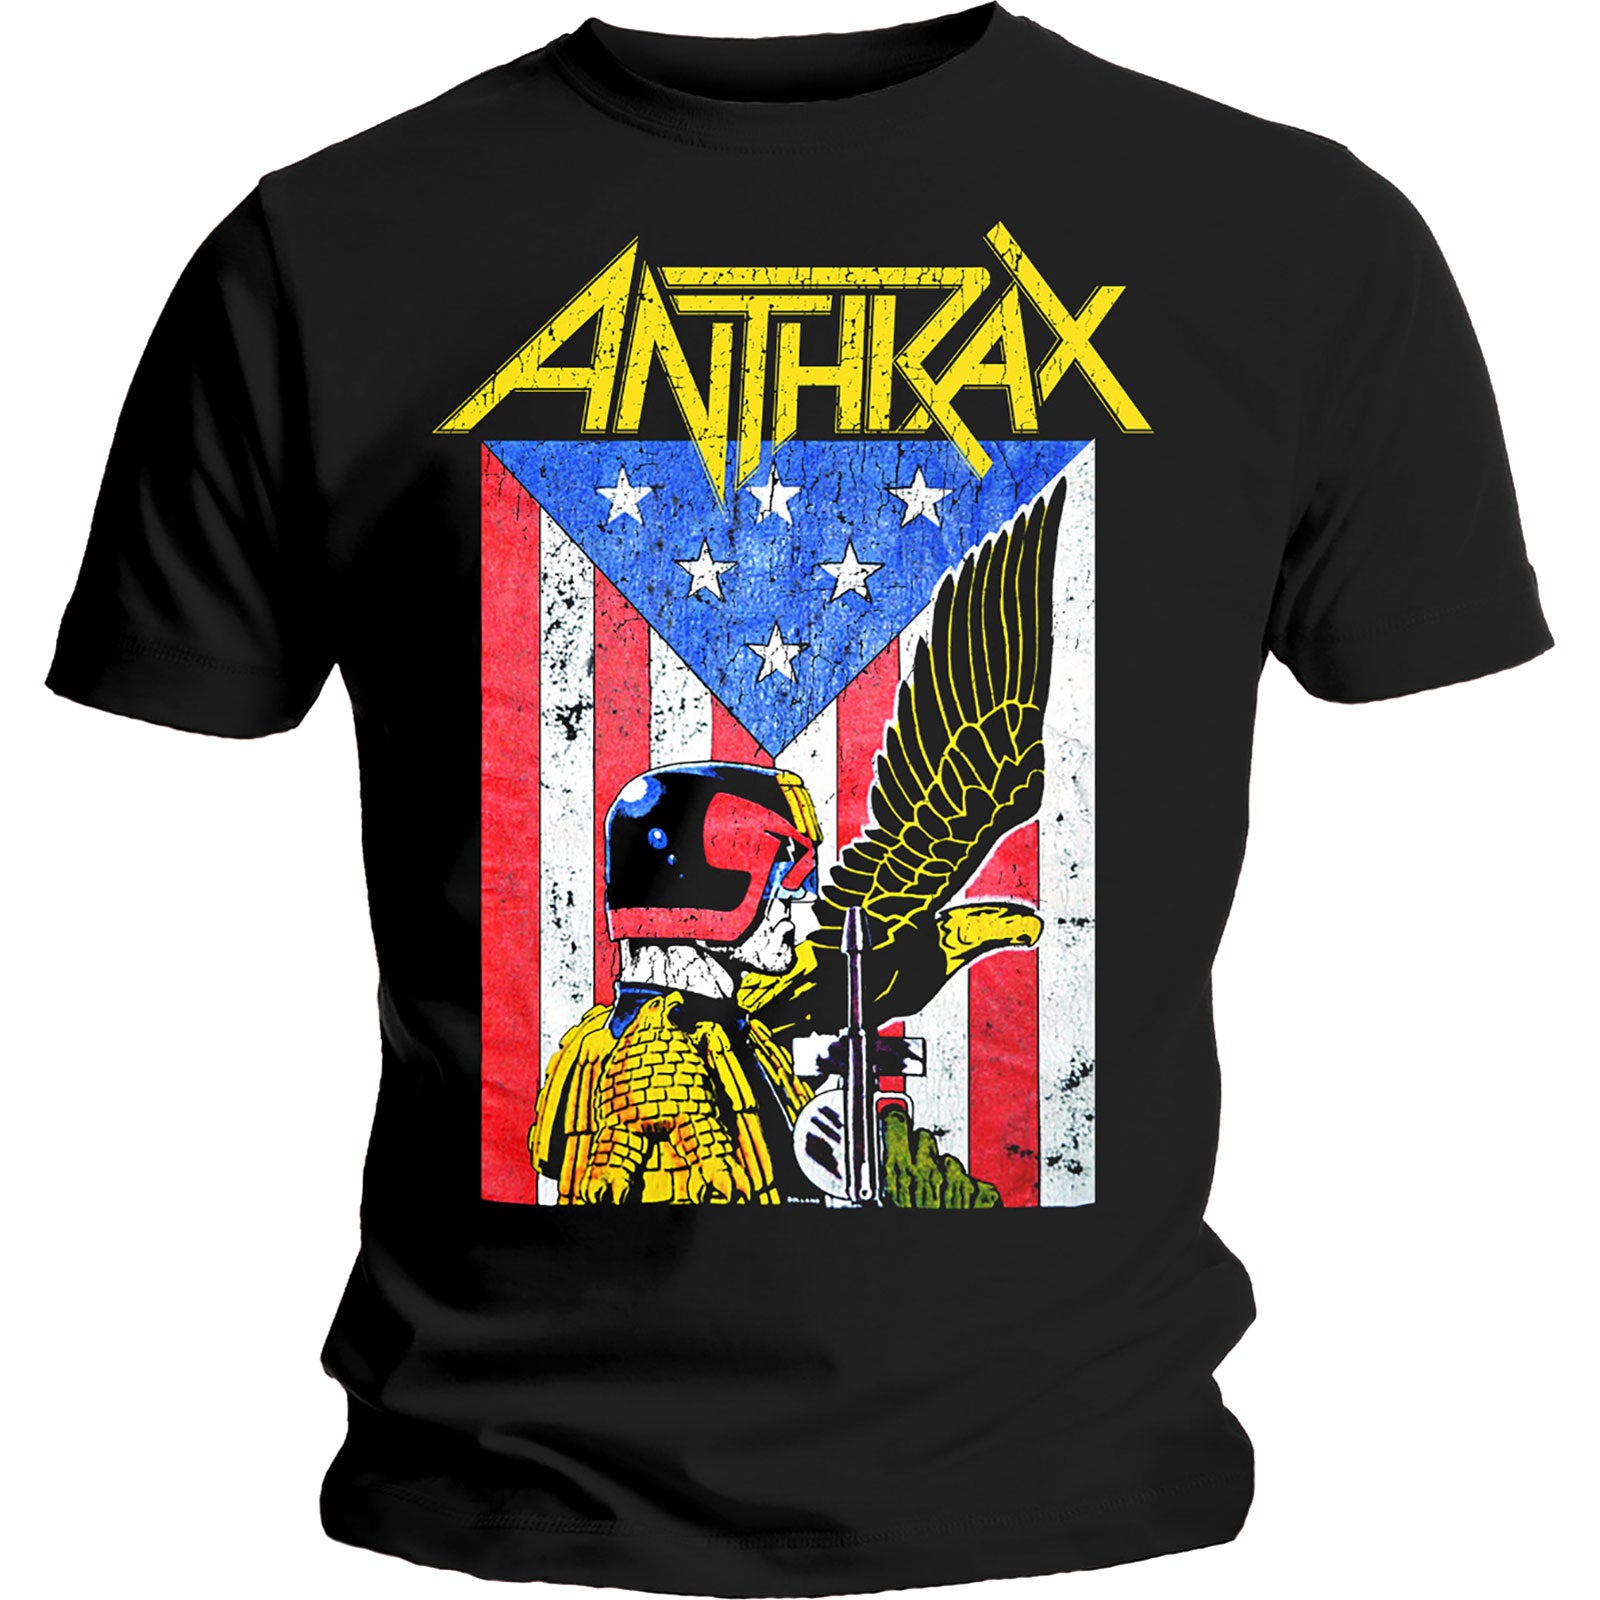 Anthrax "Dread Eagle" T shirt